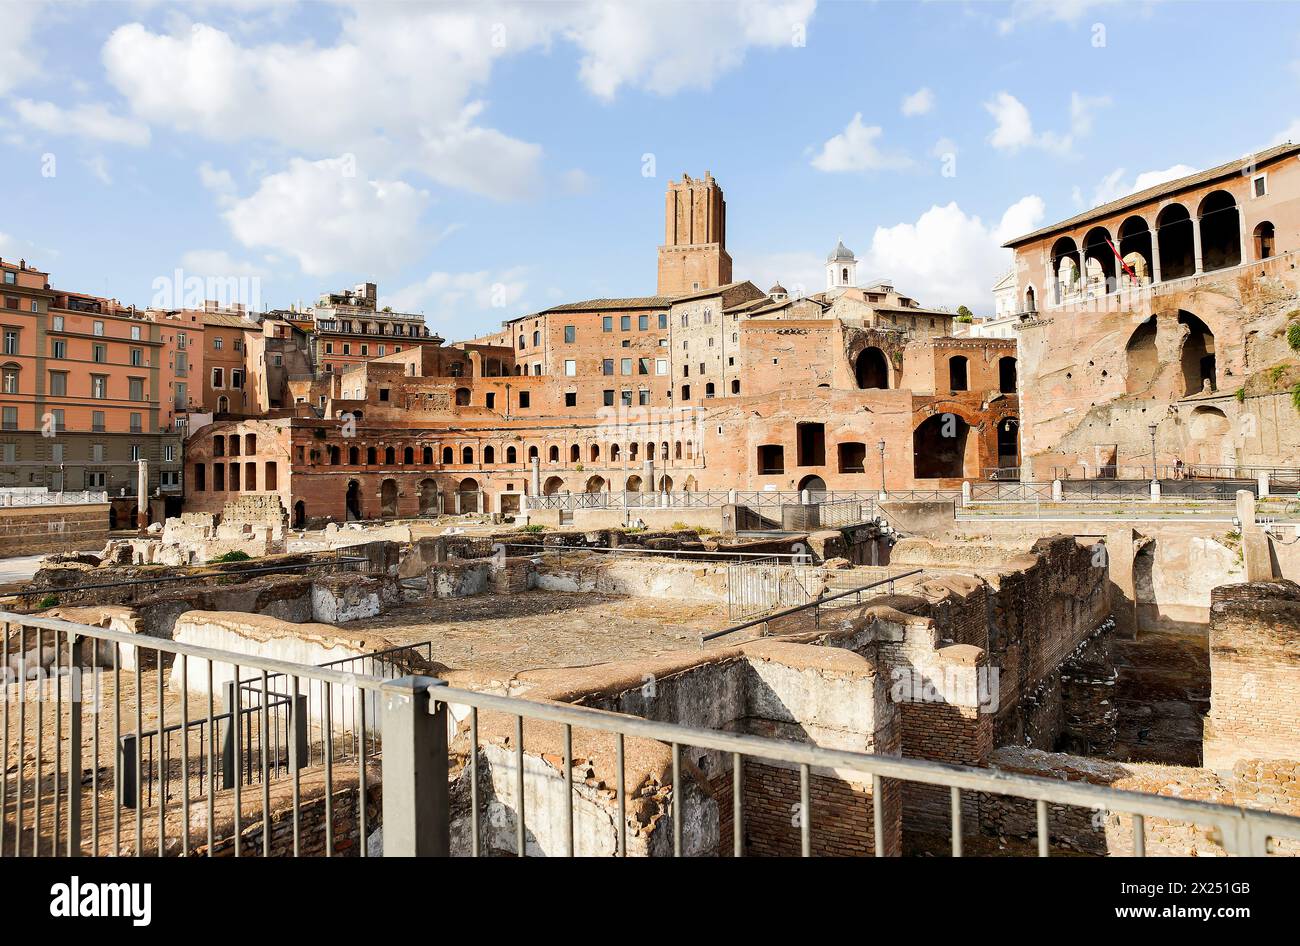 Architectural Sights of The Roman Forum (Foro Romano) in Rome, Lazio Province, Italy. Stock Photo